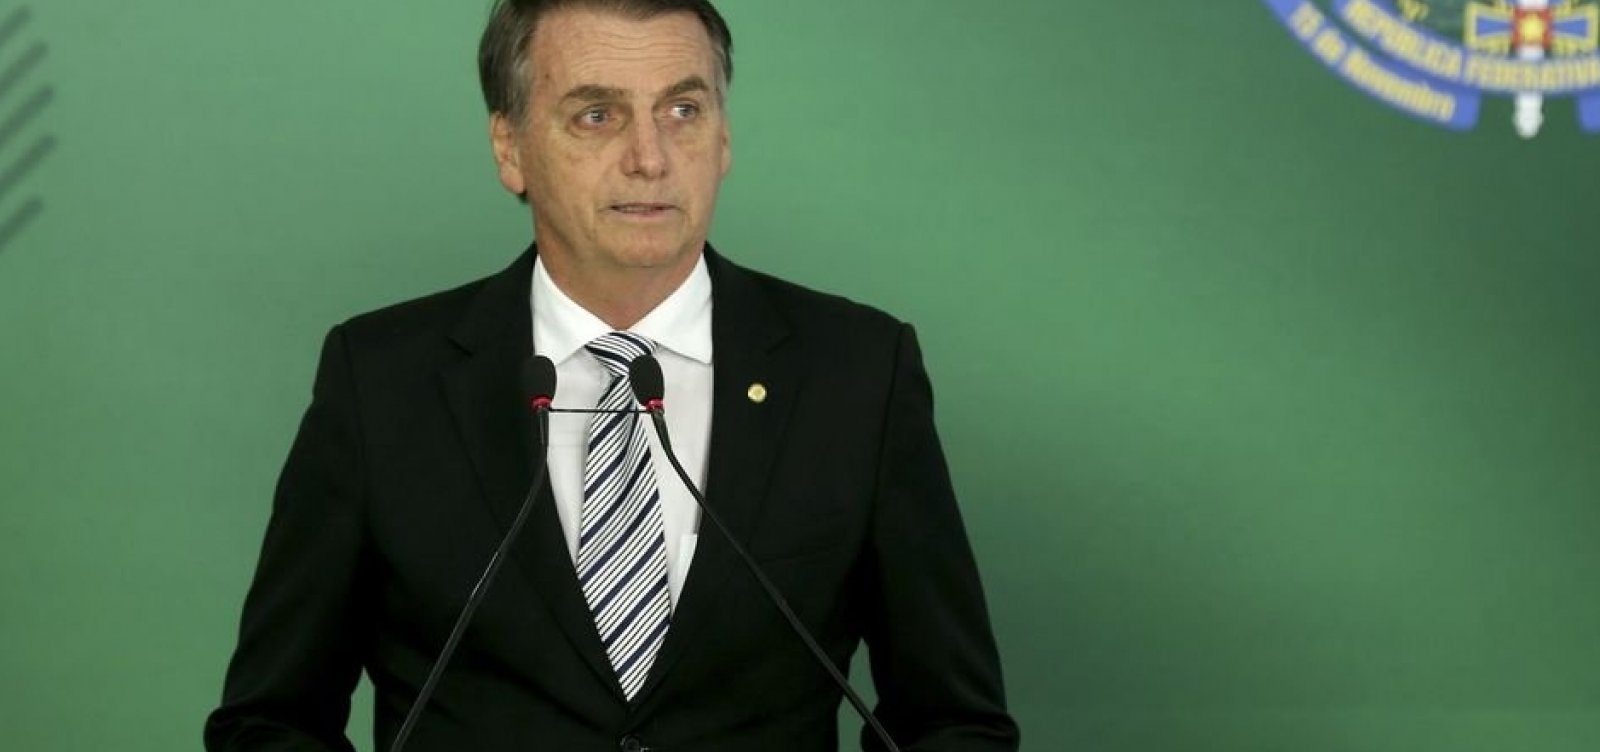 Economistas propõem a Bolsonaro fim da estabilidade e maior flexibilidade no serviço público